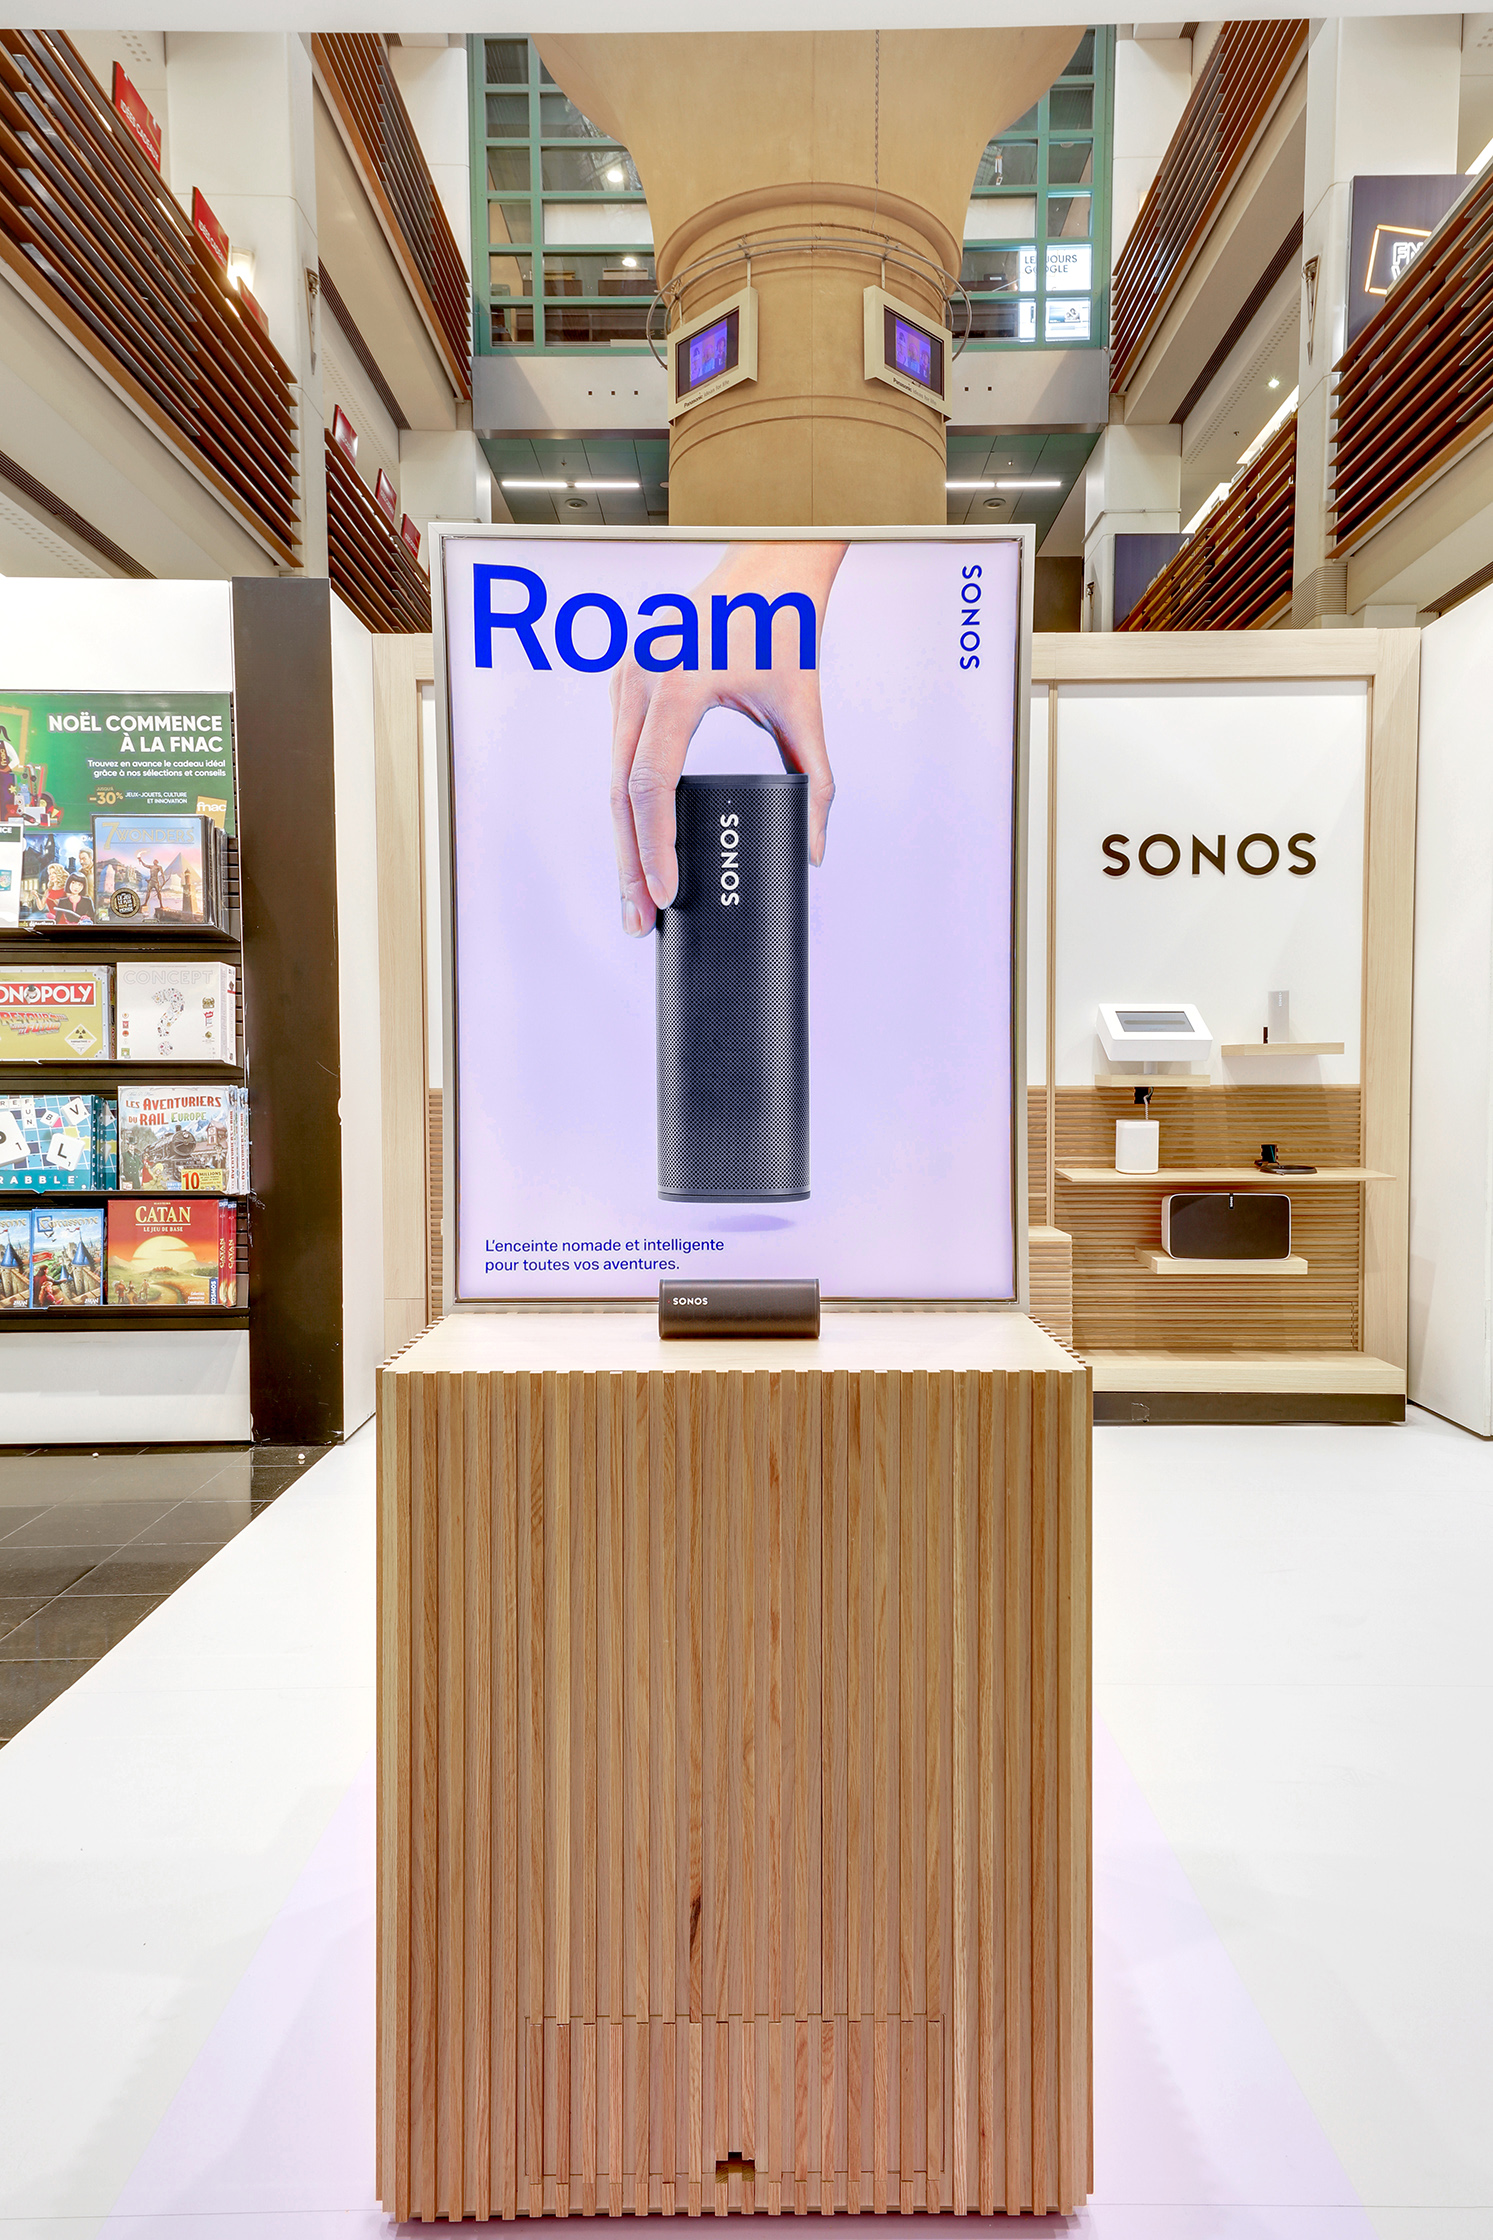 Une photo de la devanture de la Fnac des Ternes à Paris, avec une affiche publicitaire pour le produit de haut-parleurs Sonos en première plan.